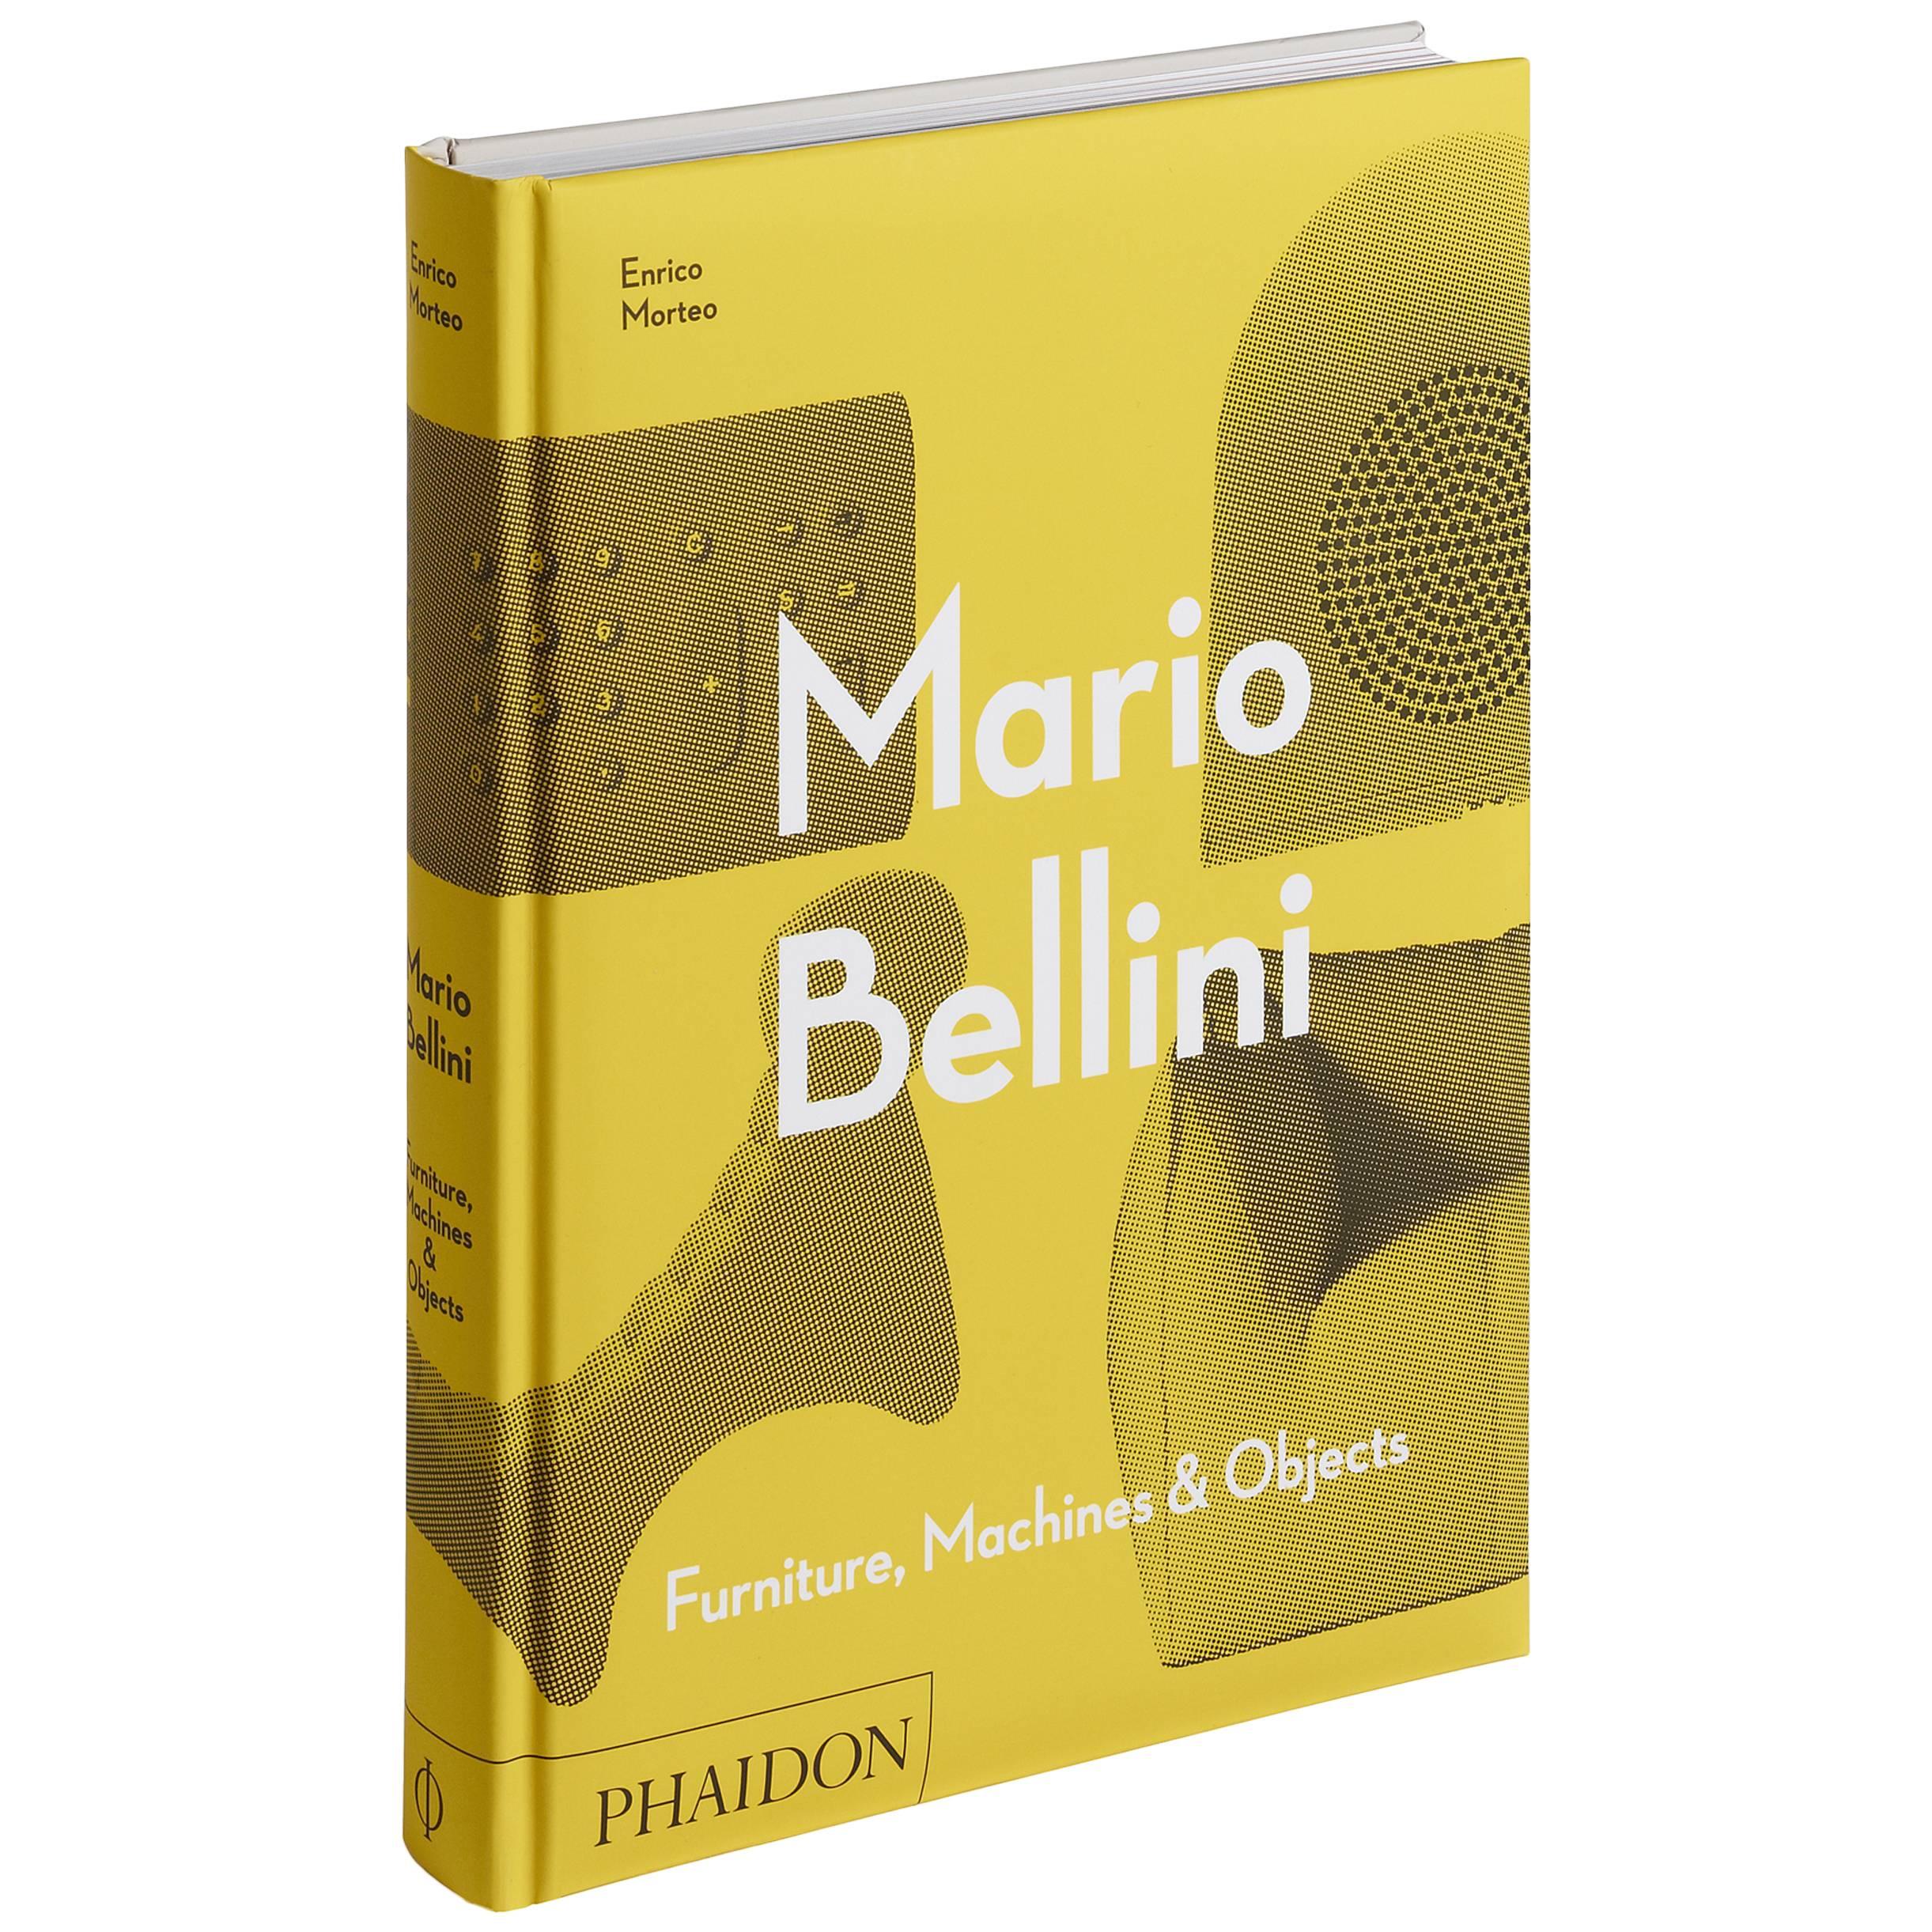 Mario Bellini Book For Sale